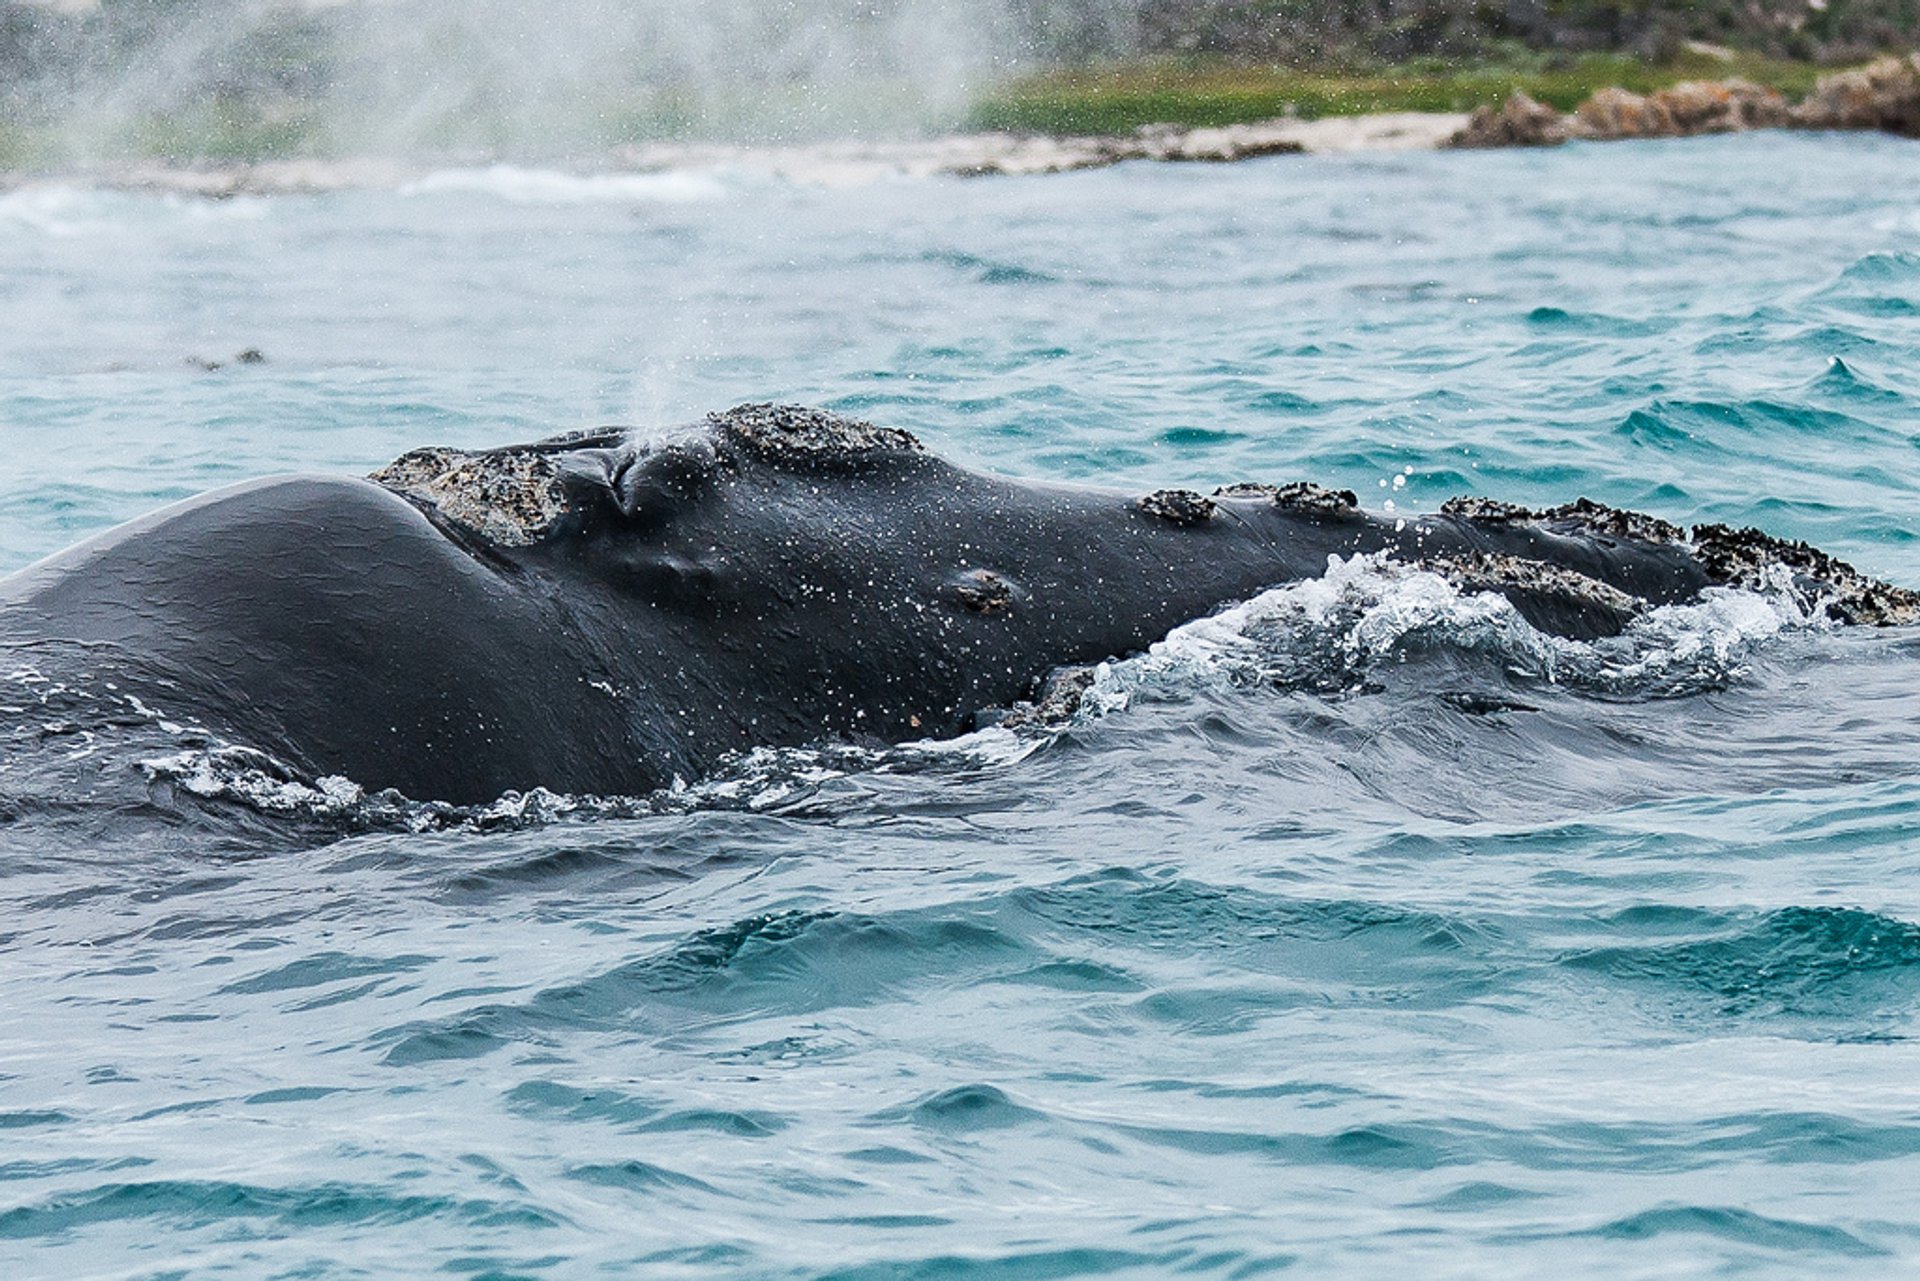 Osservazione delle balene a terra